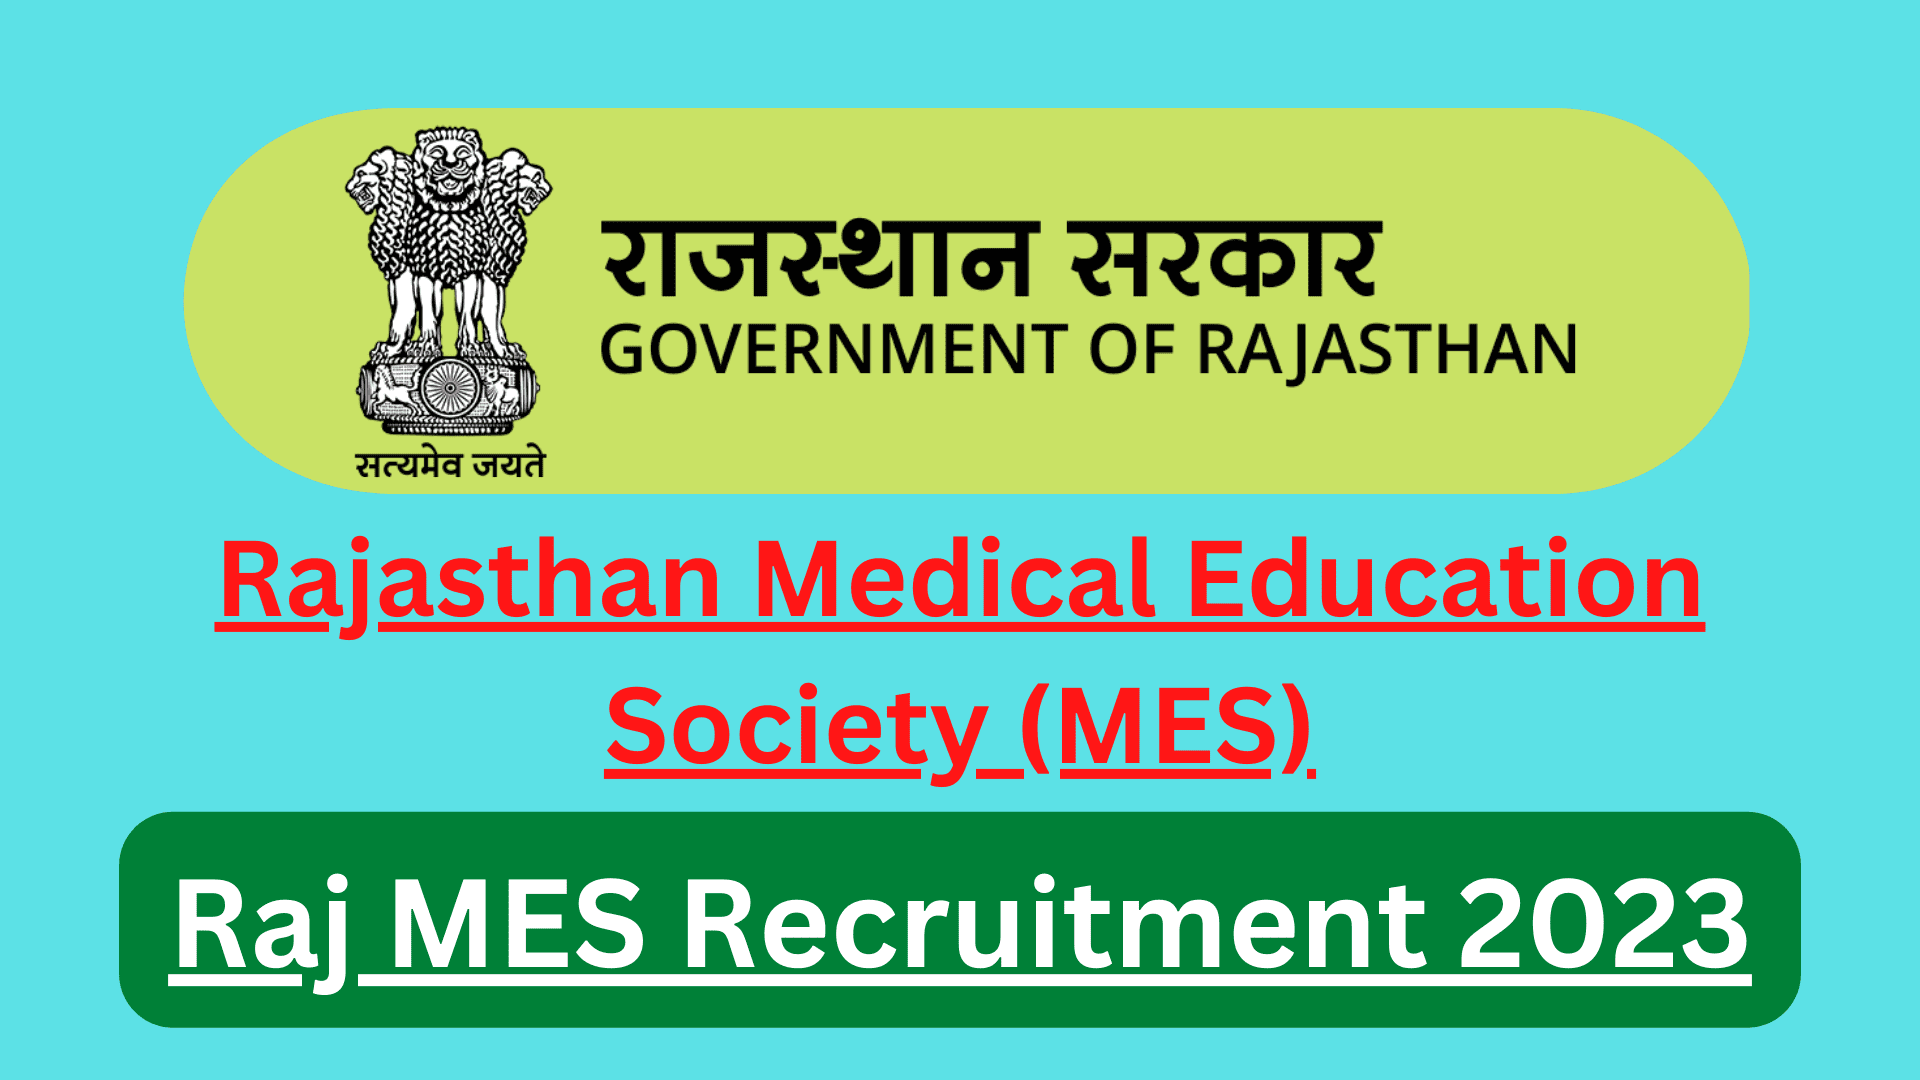 Rajasthan MES Recruitment 2023 राजस्थान एमईएस भर्ती 2023 का बंपर पदों के लिए नोटिफिकेशन raj-mes recruitment 2023 notification